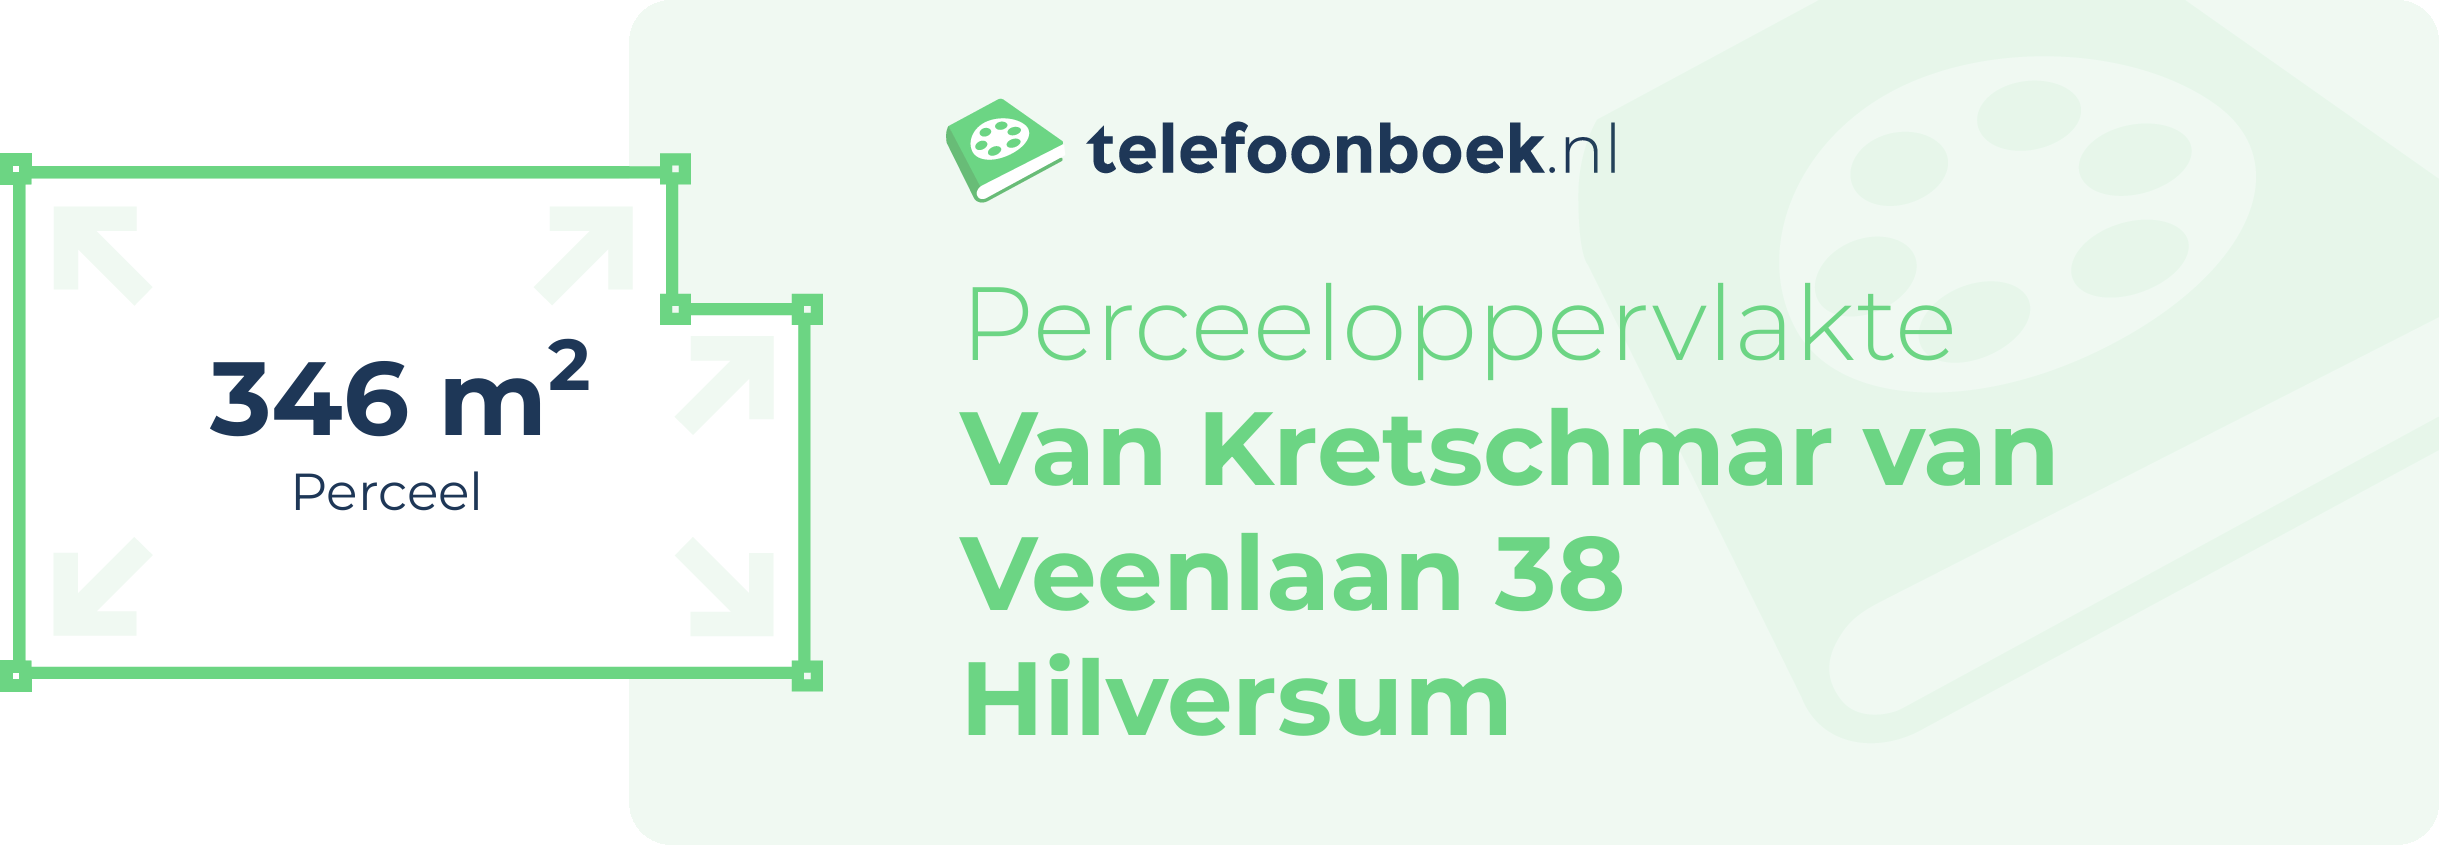 Perceeloppervlakte Van Kretschmar Van Veenlaan 38 Hilversum